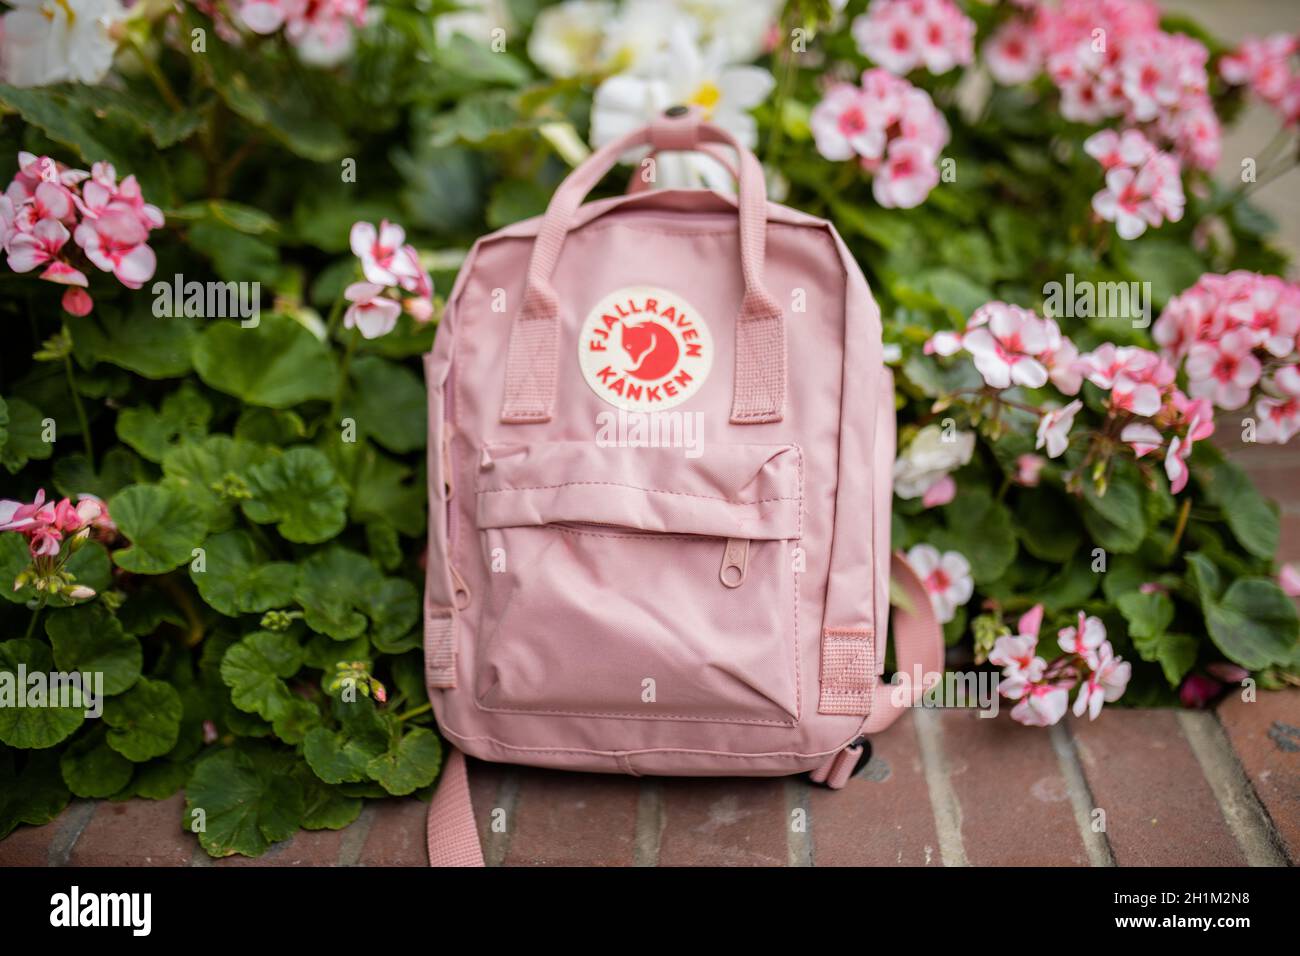 Londres, Royaume-Uni - 4 novembre 2020 : petit sac à dos Fjallraven rose sur jardinière en briques avec plantes et fleurs roses.Sac à dos rose et fleurs colorées sur bri Banque D'Images